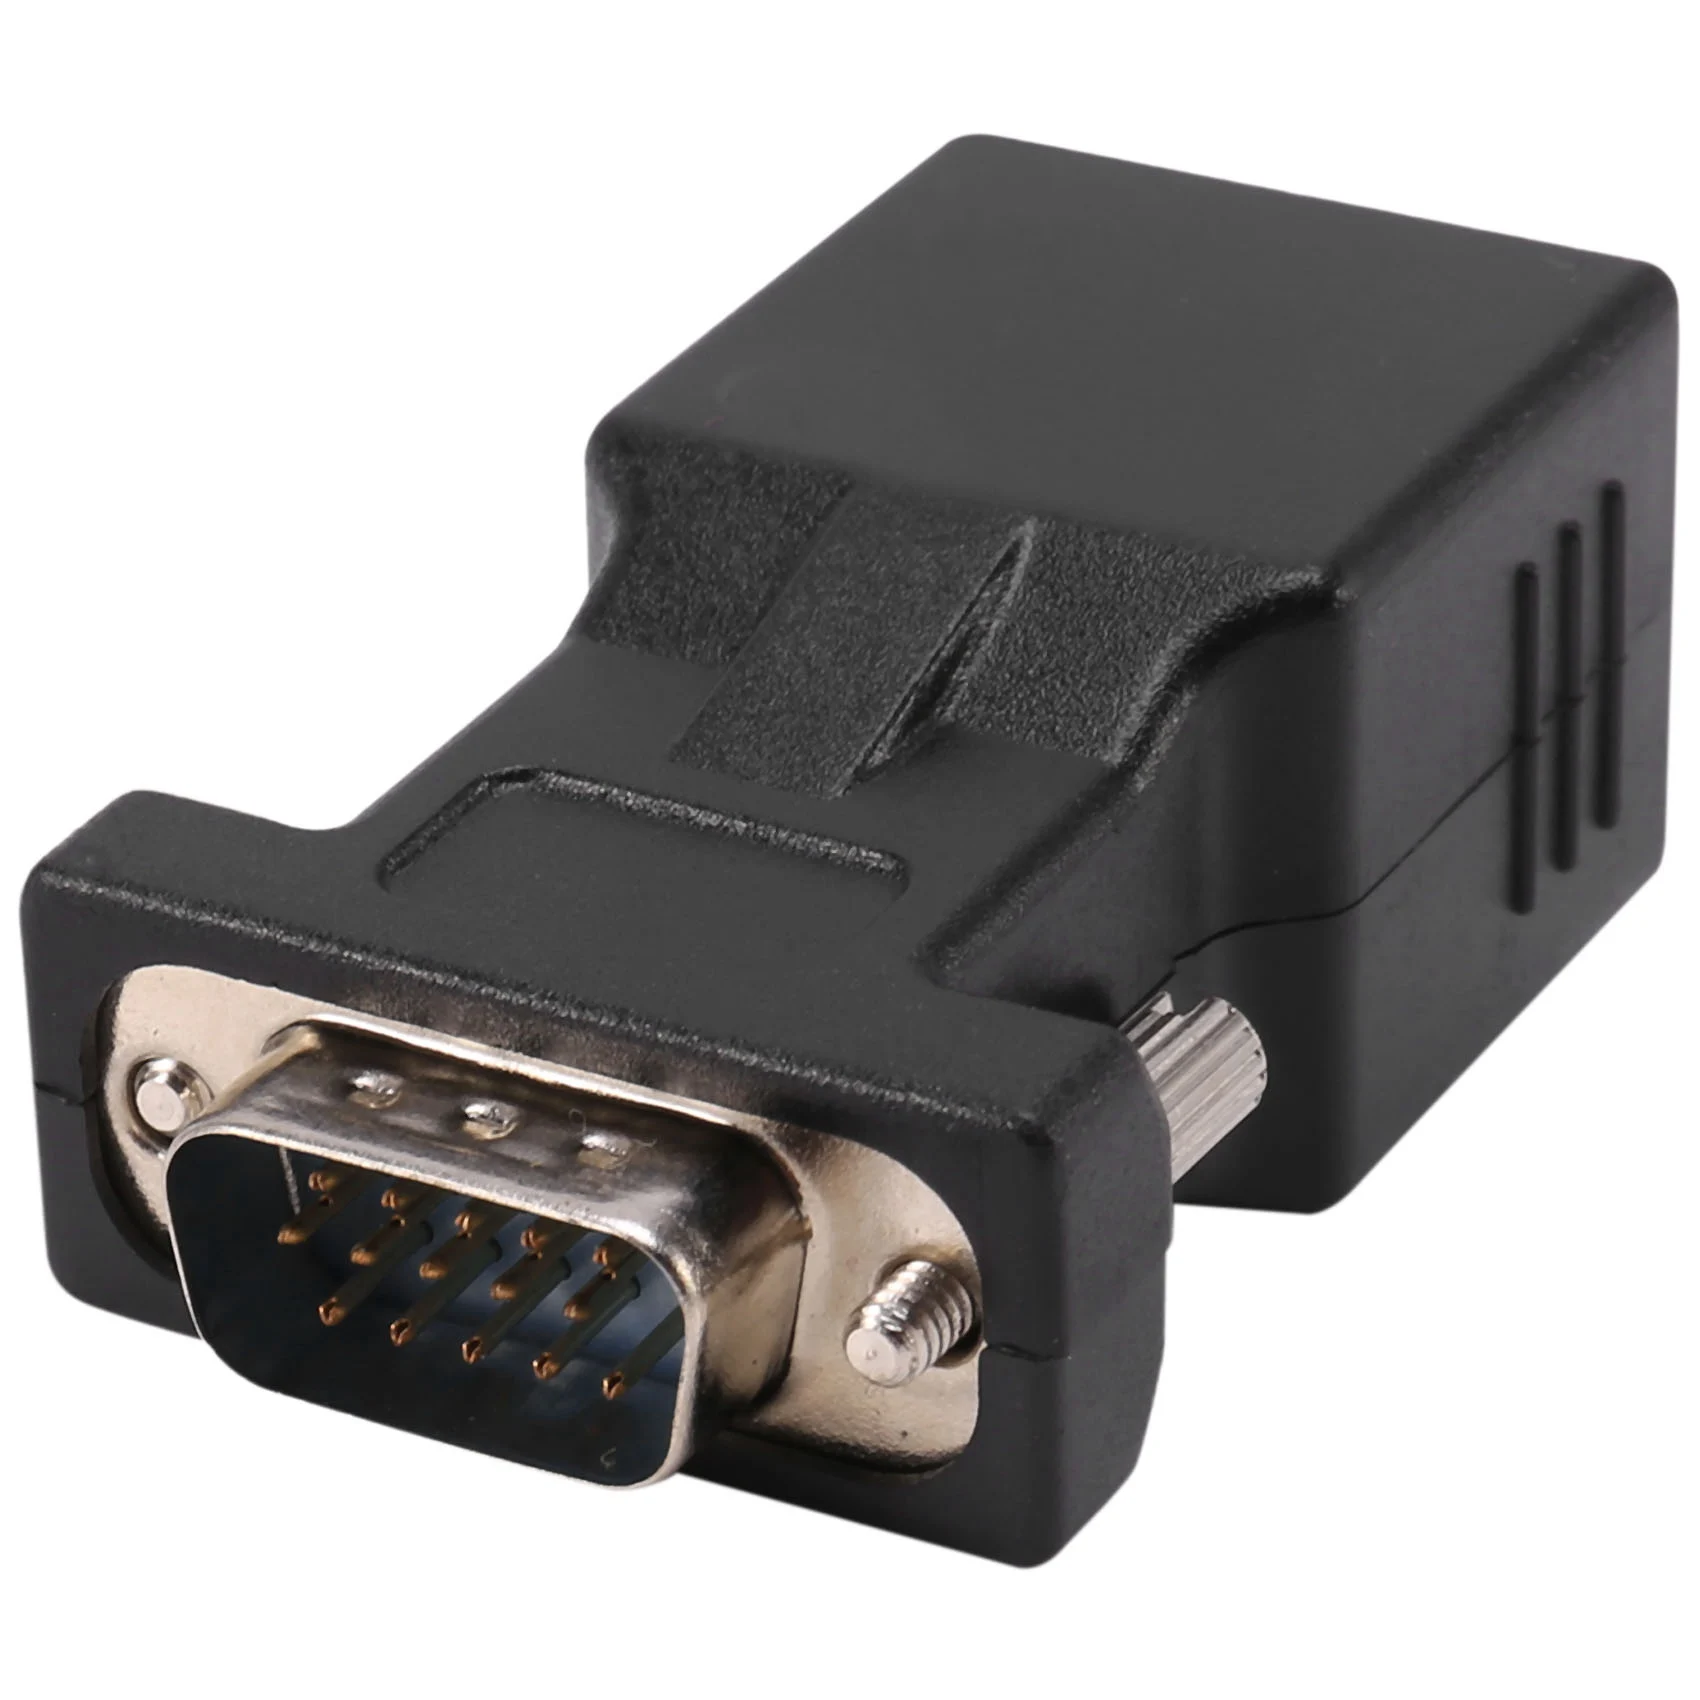 

Адаптер для сетевого кабеля VGA разветвитель штекер к локальной сети CAT5 CAT6 RJ45